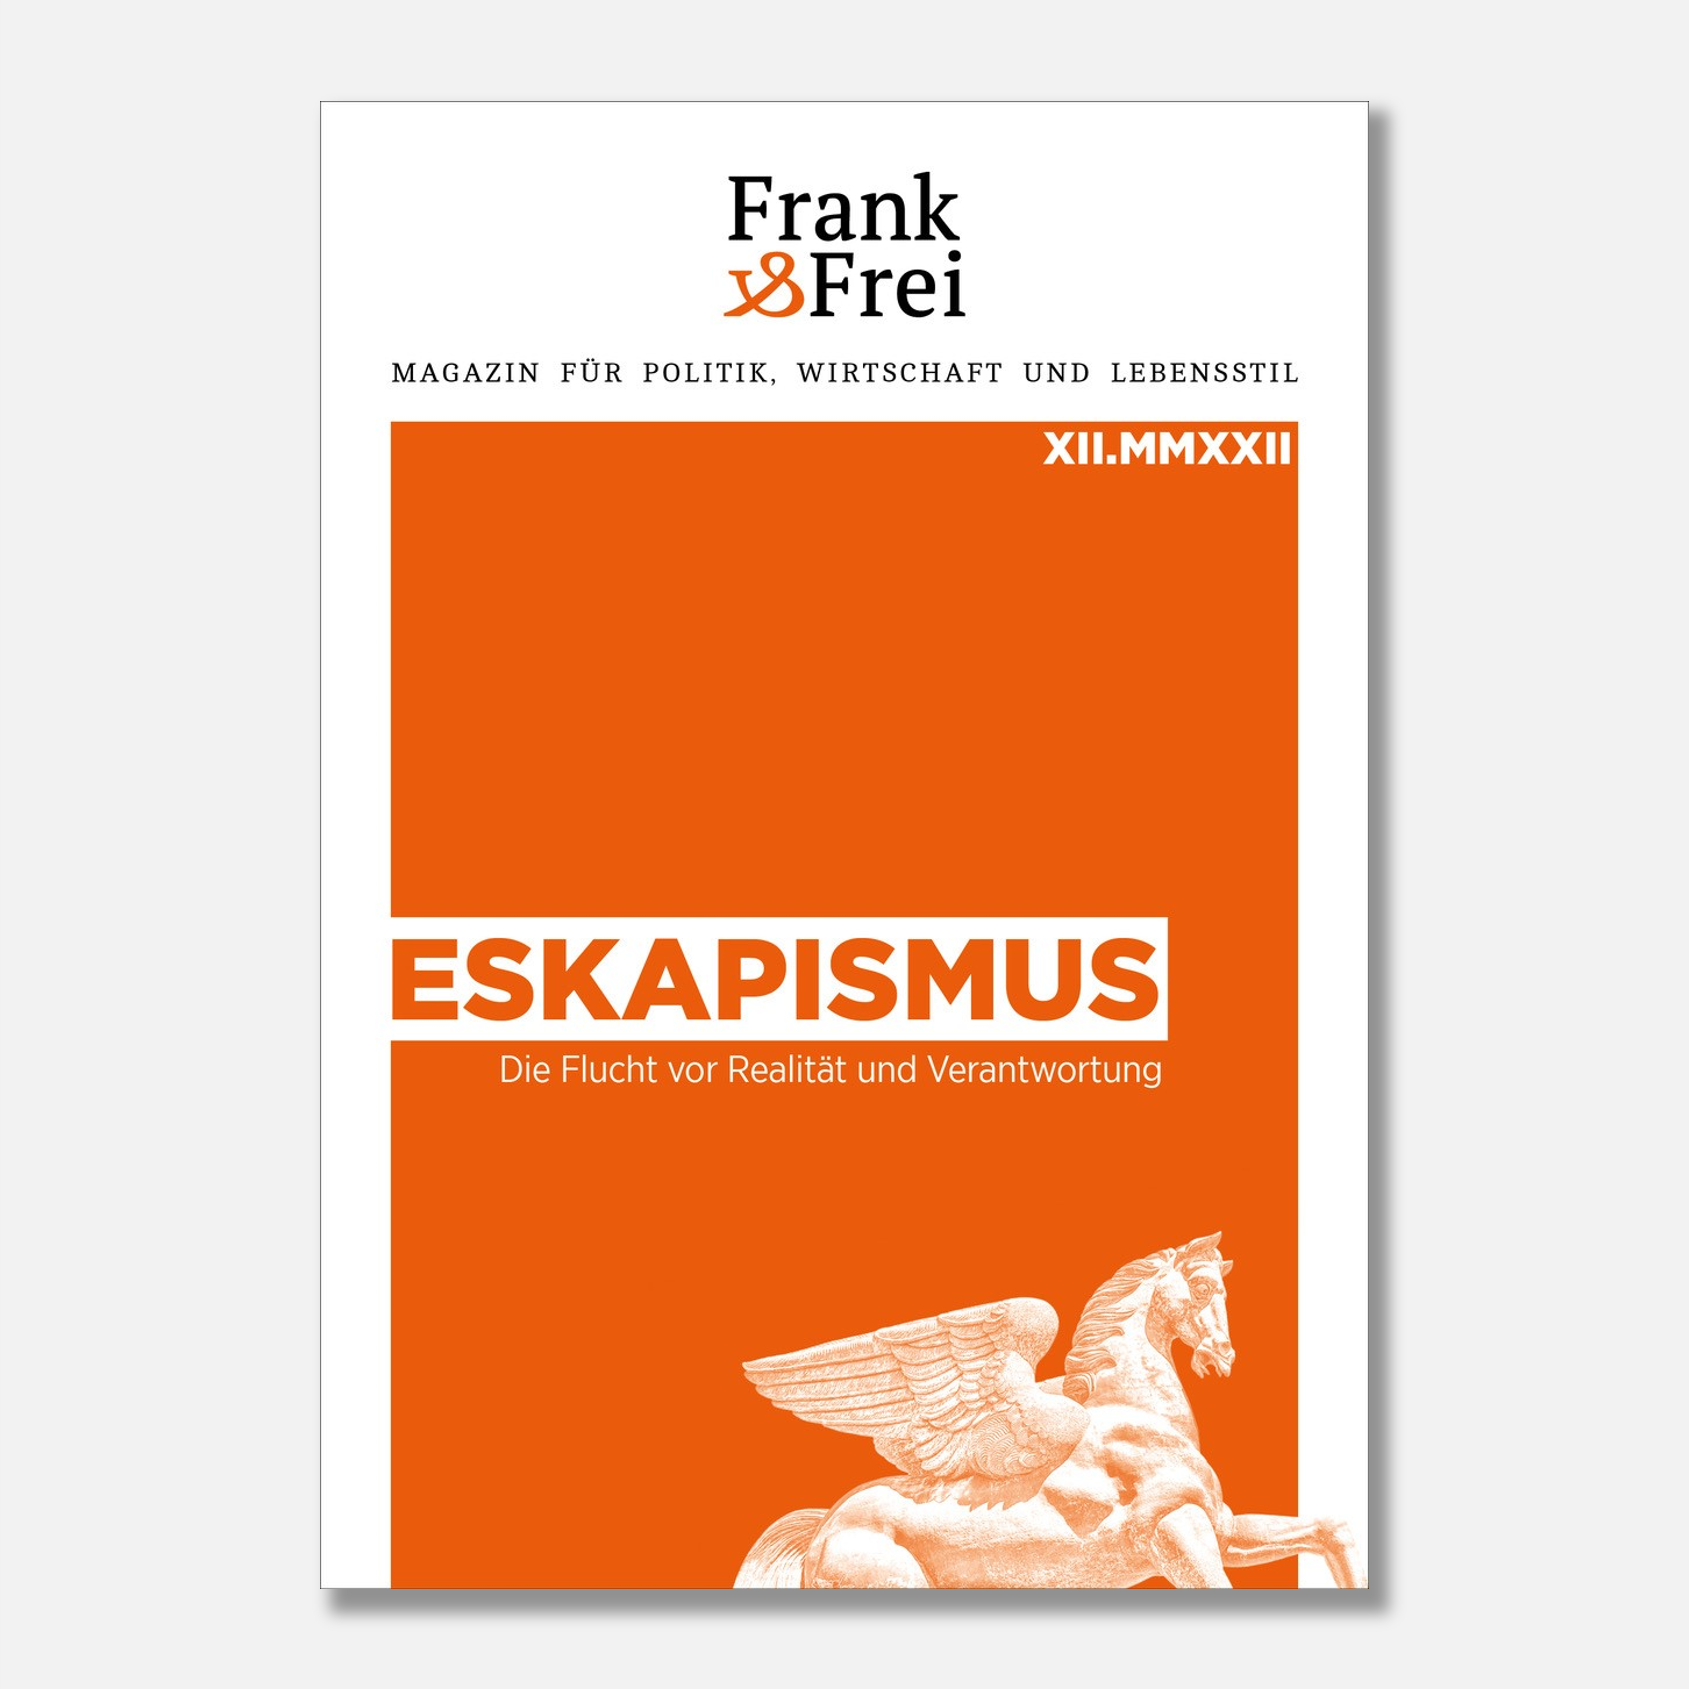 Frank&Frei Xll: Eskapismus – Die Flucht vor Realität und Verantwortung